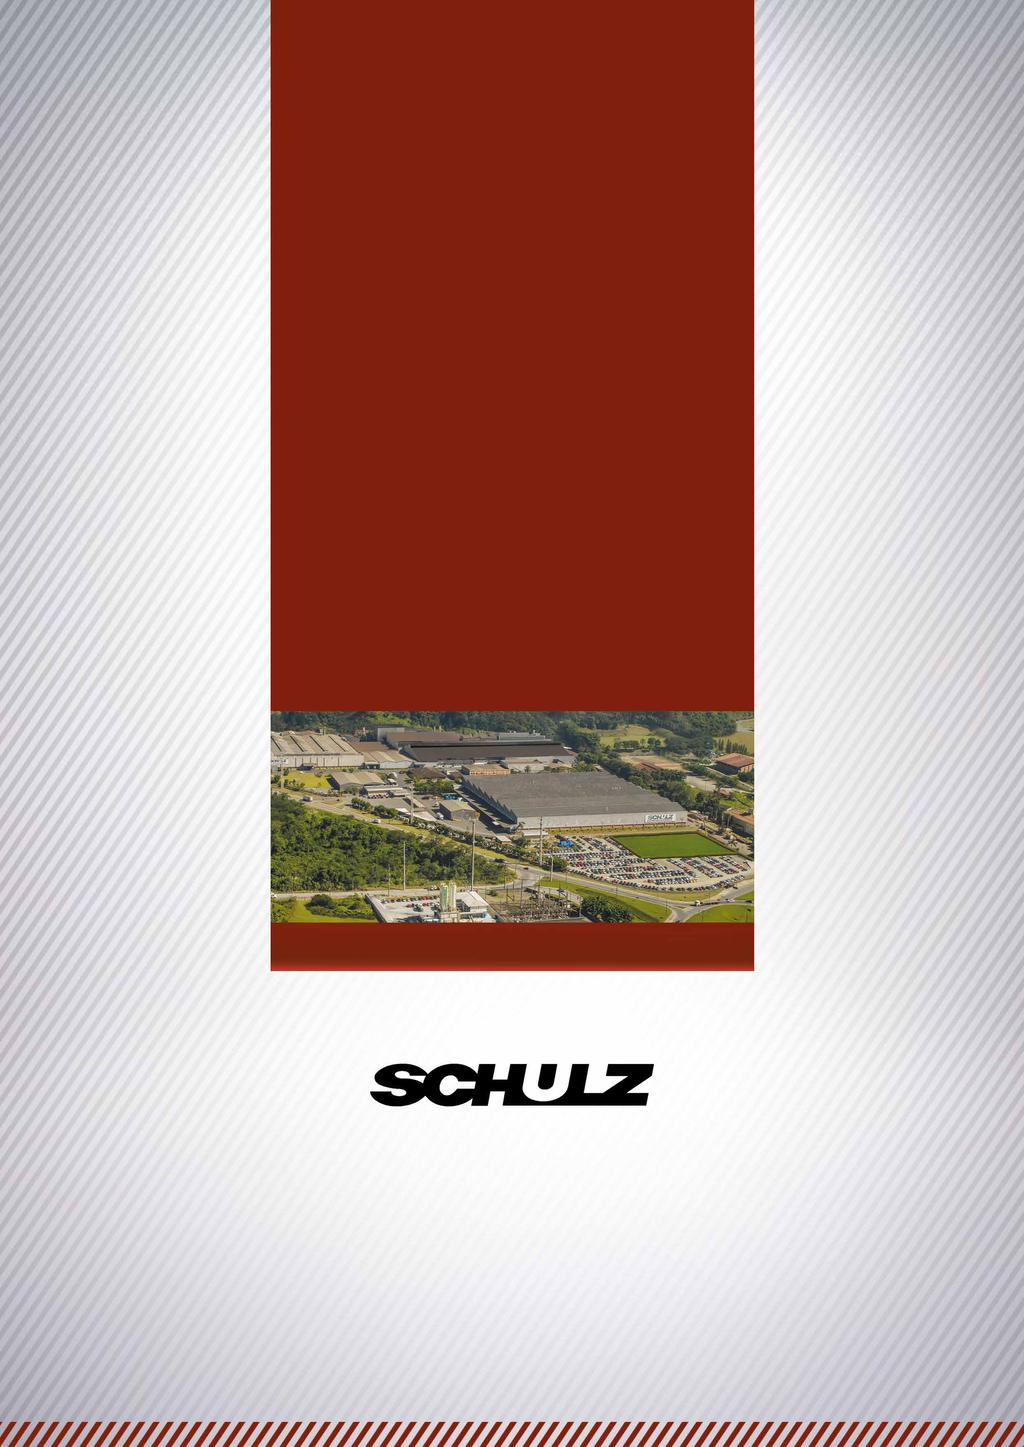 Desde 1963 no mercado, a Schulz é uma empresa em contínua evolução. No início, suas atividades se concentravam na área de fundição e, em 1972, passaram a ser produzidos compressores de ar.